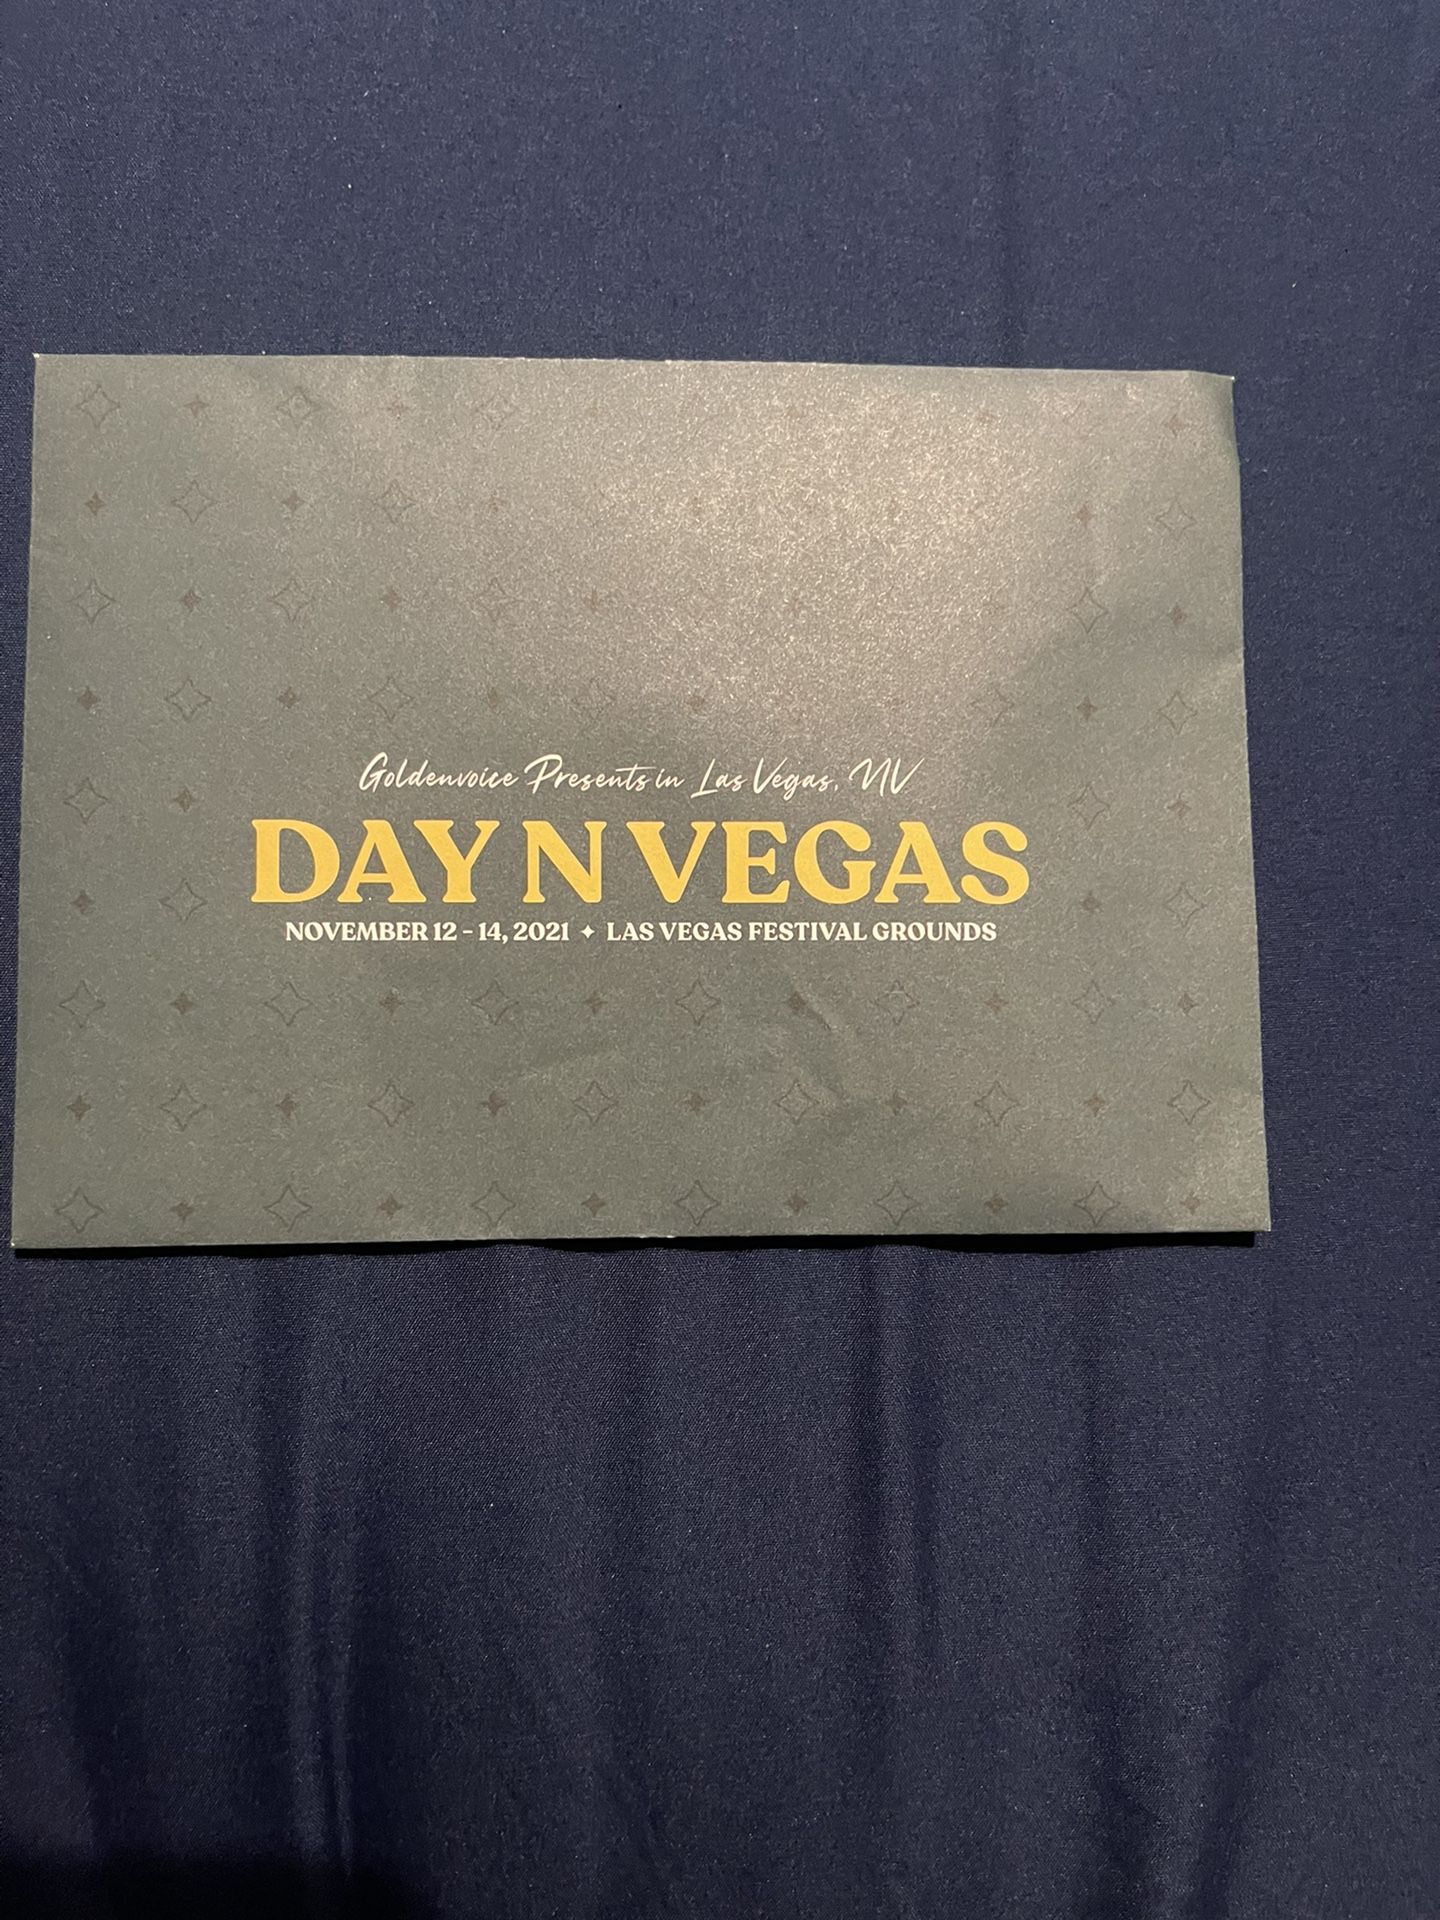 Day N Vegas 